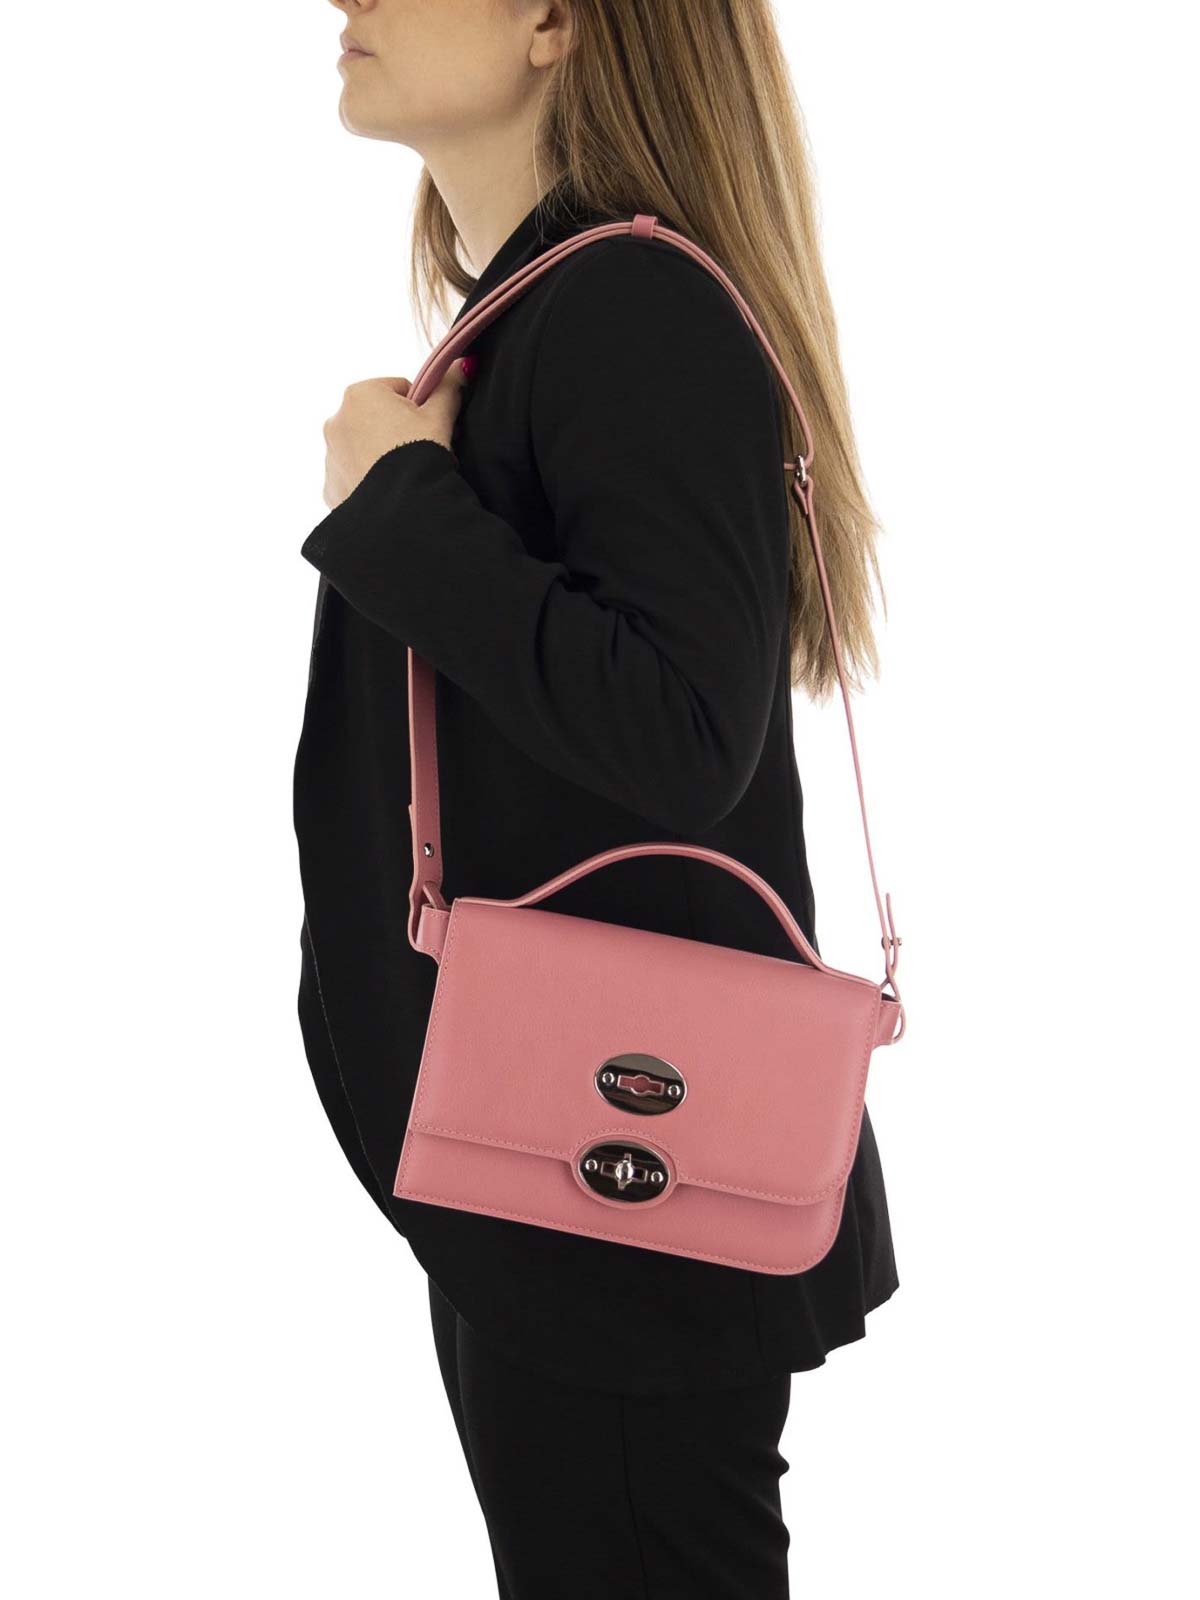 Shop Zanellato Ella Piuma Knot Bag In Light Pink